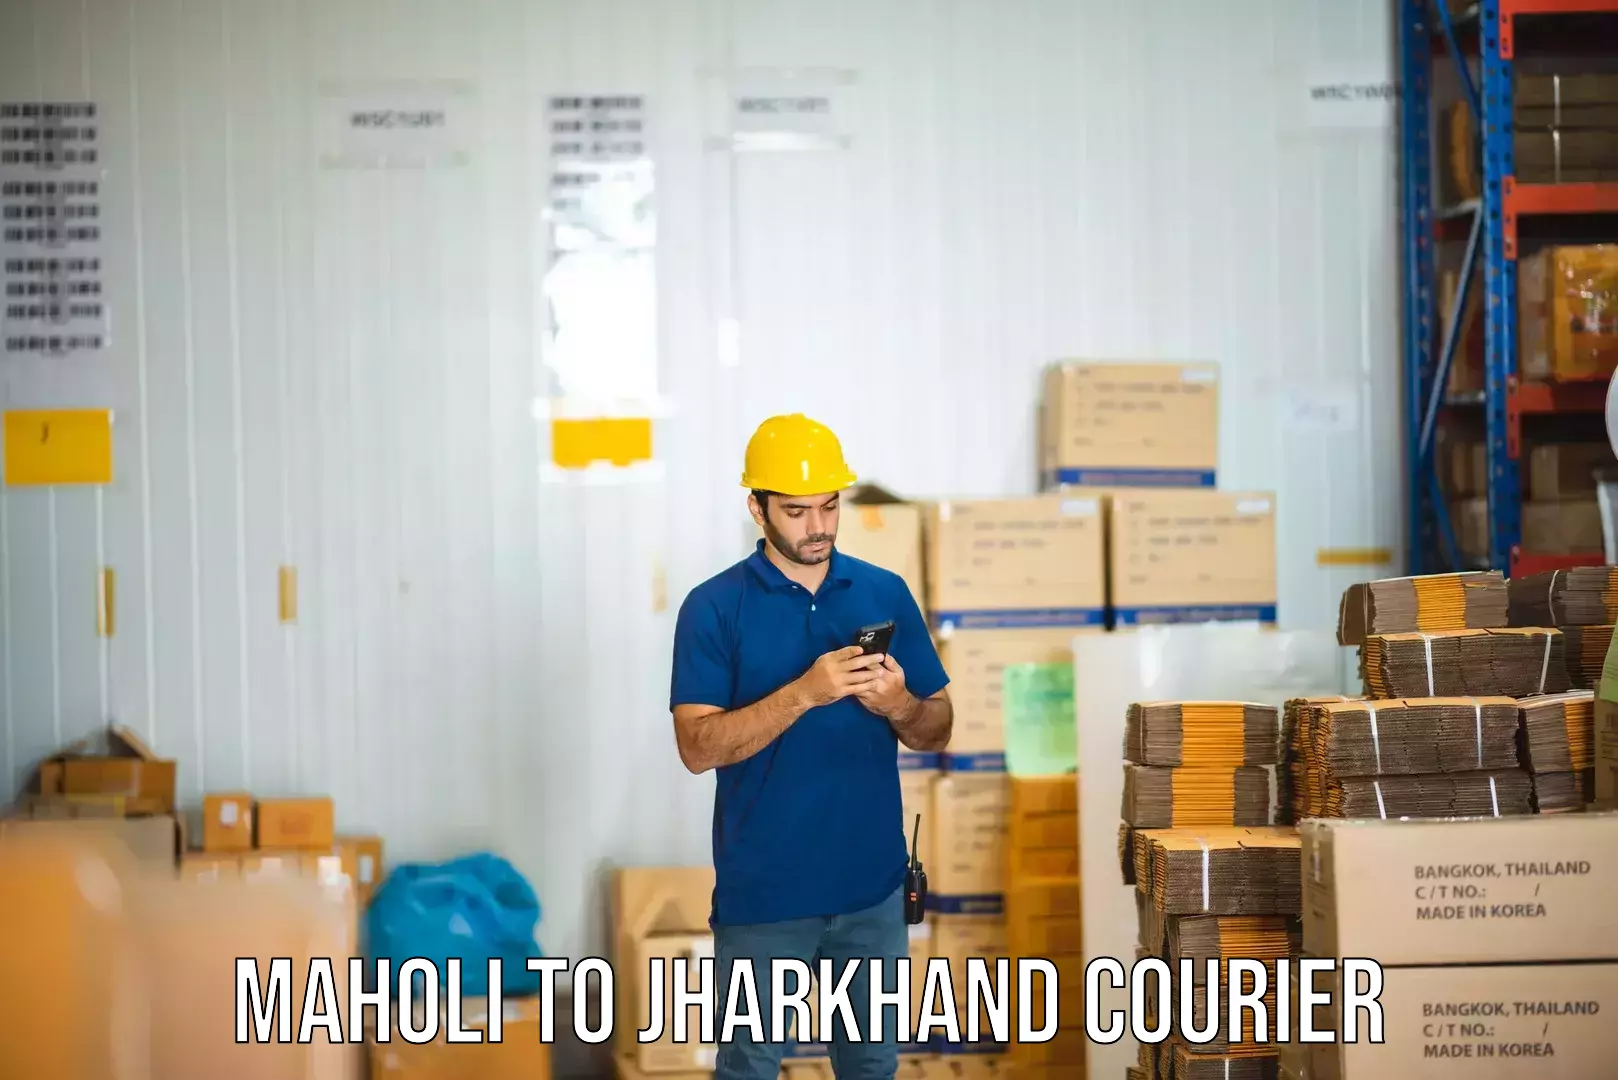 High-capacity parcel service Maholi to Jharkhand